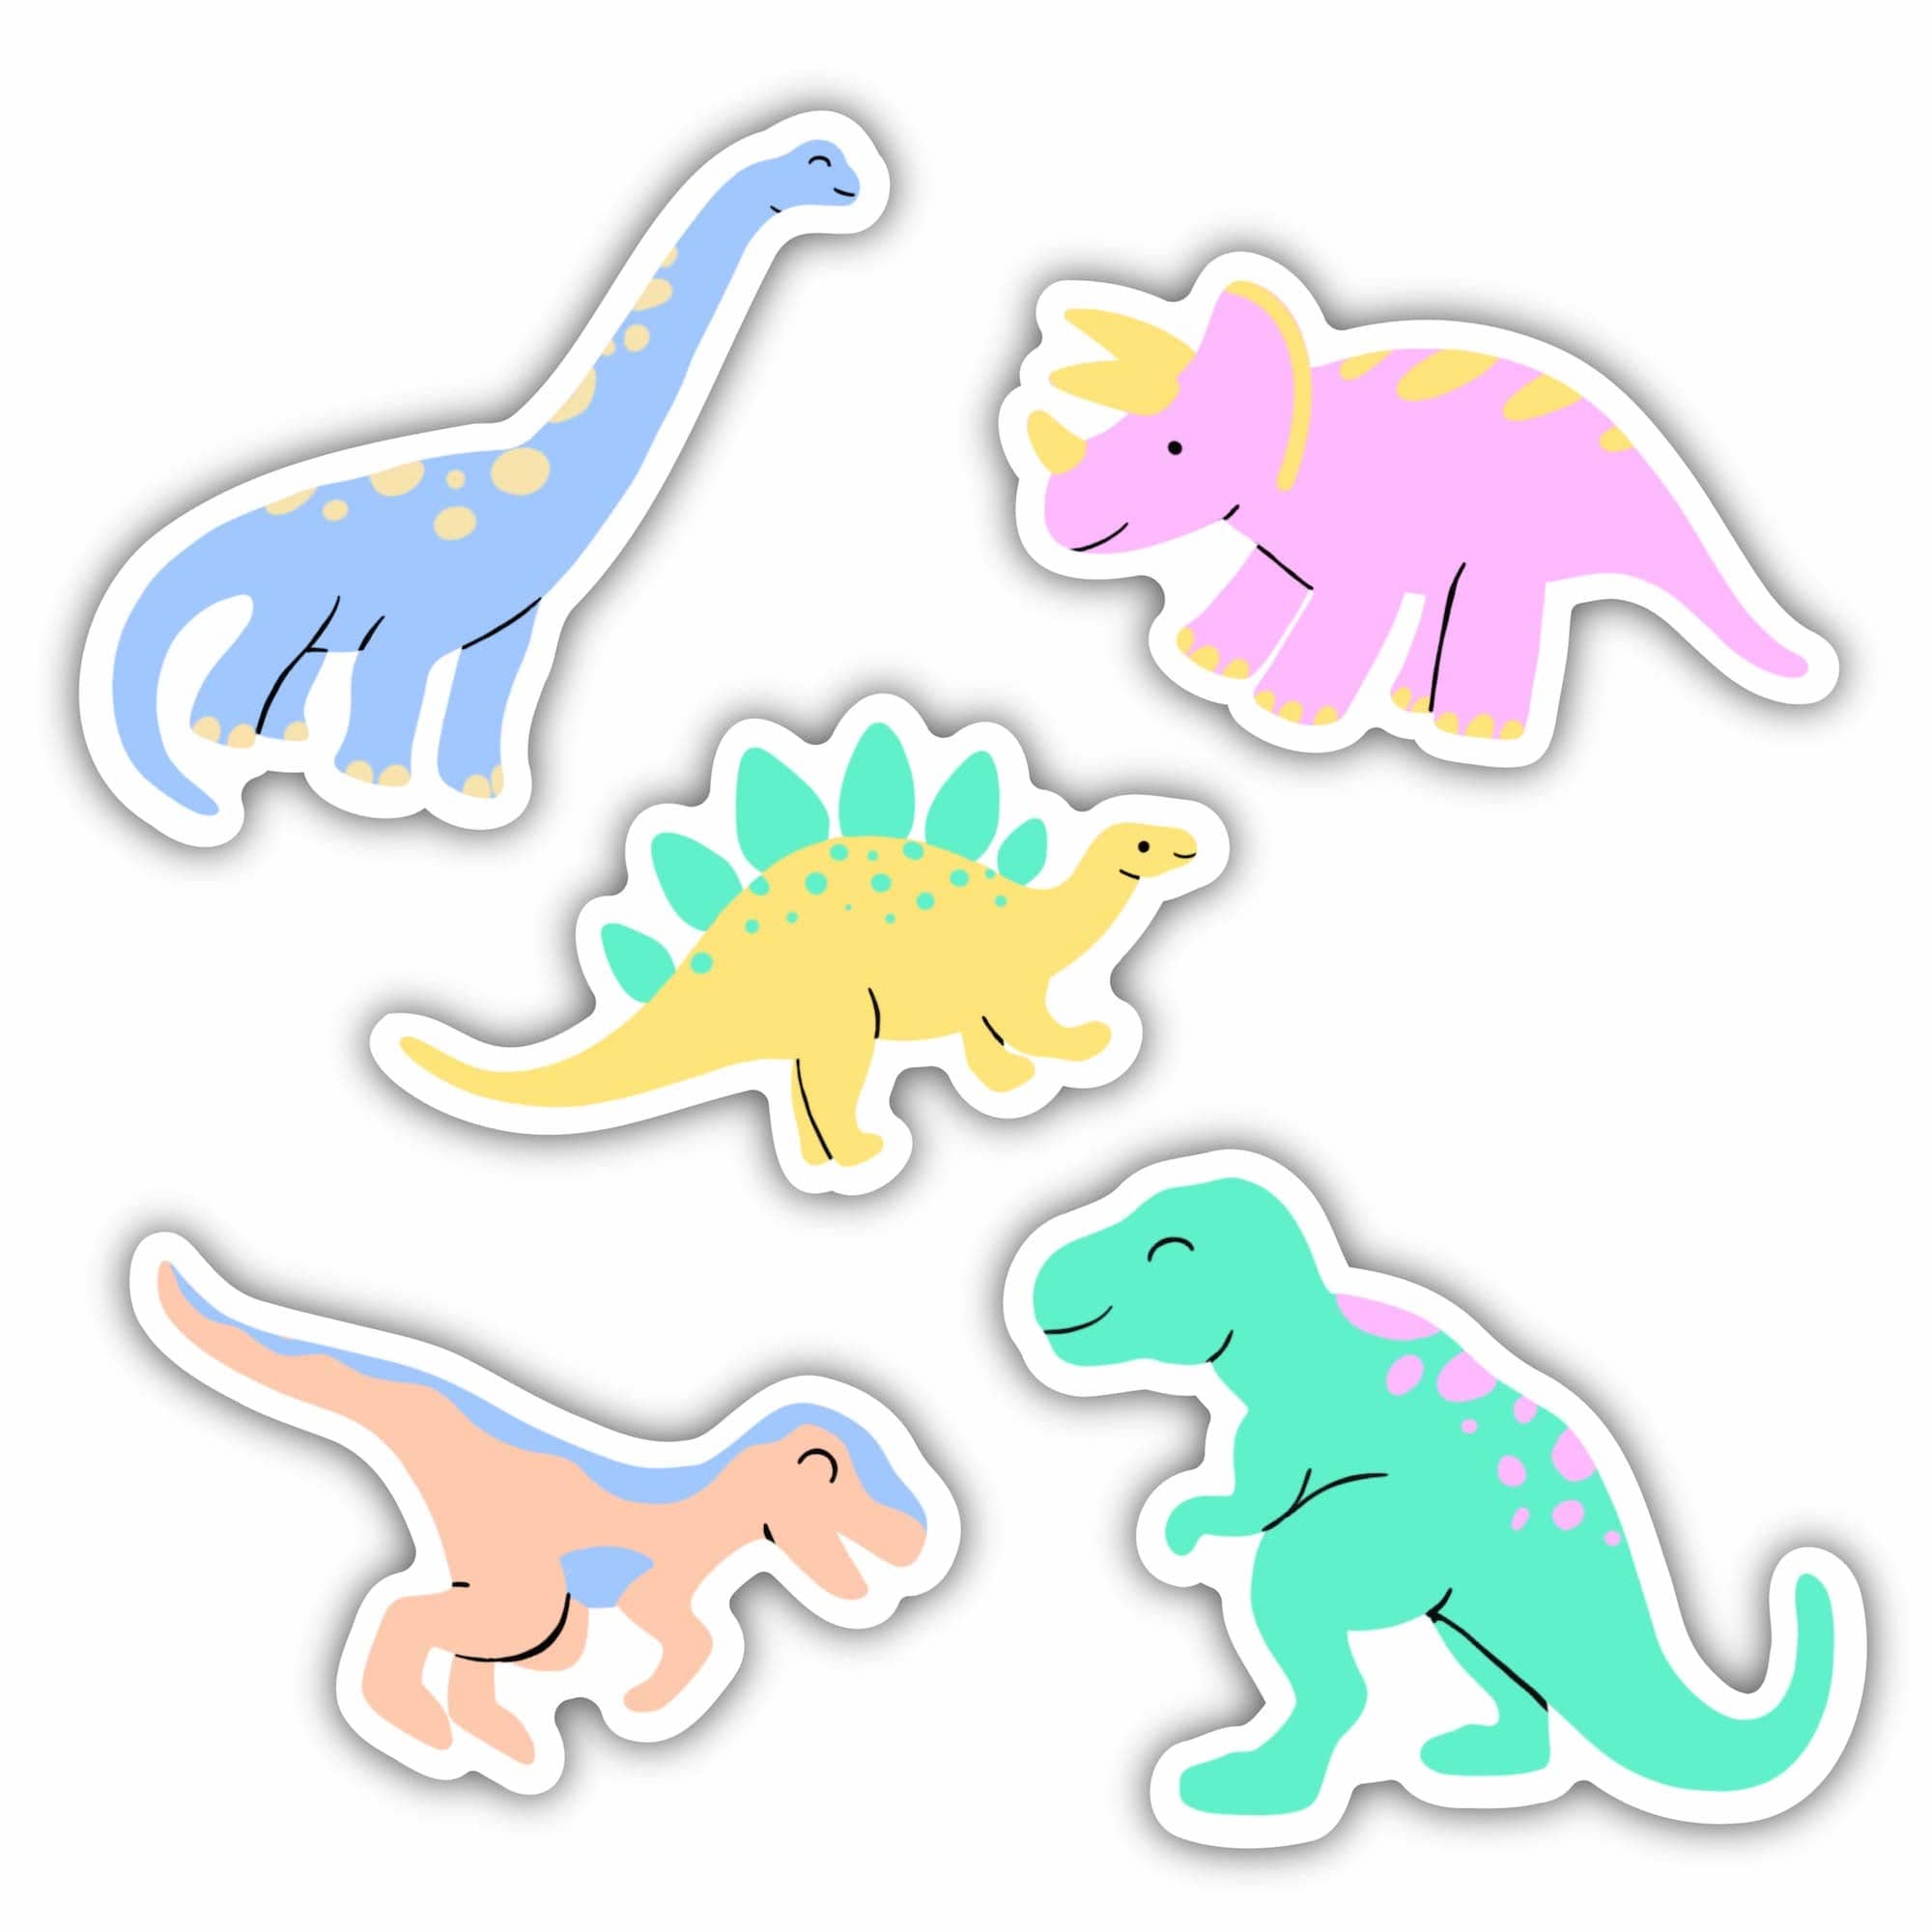 Fuzzy Rainbow Dinosaur Stickers